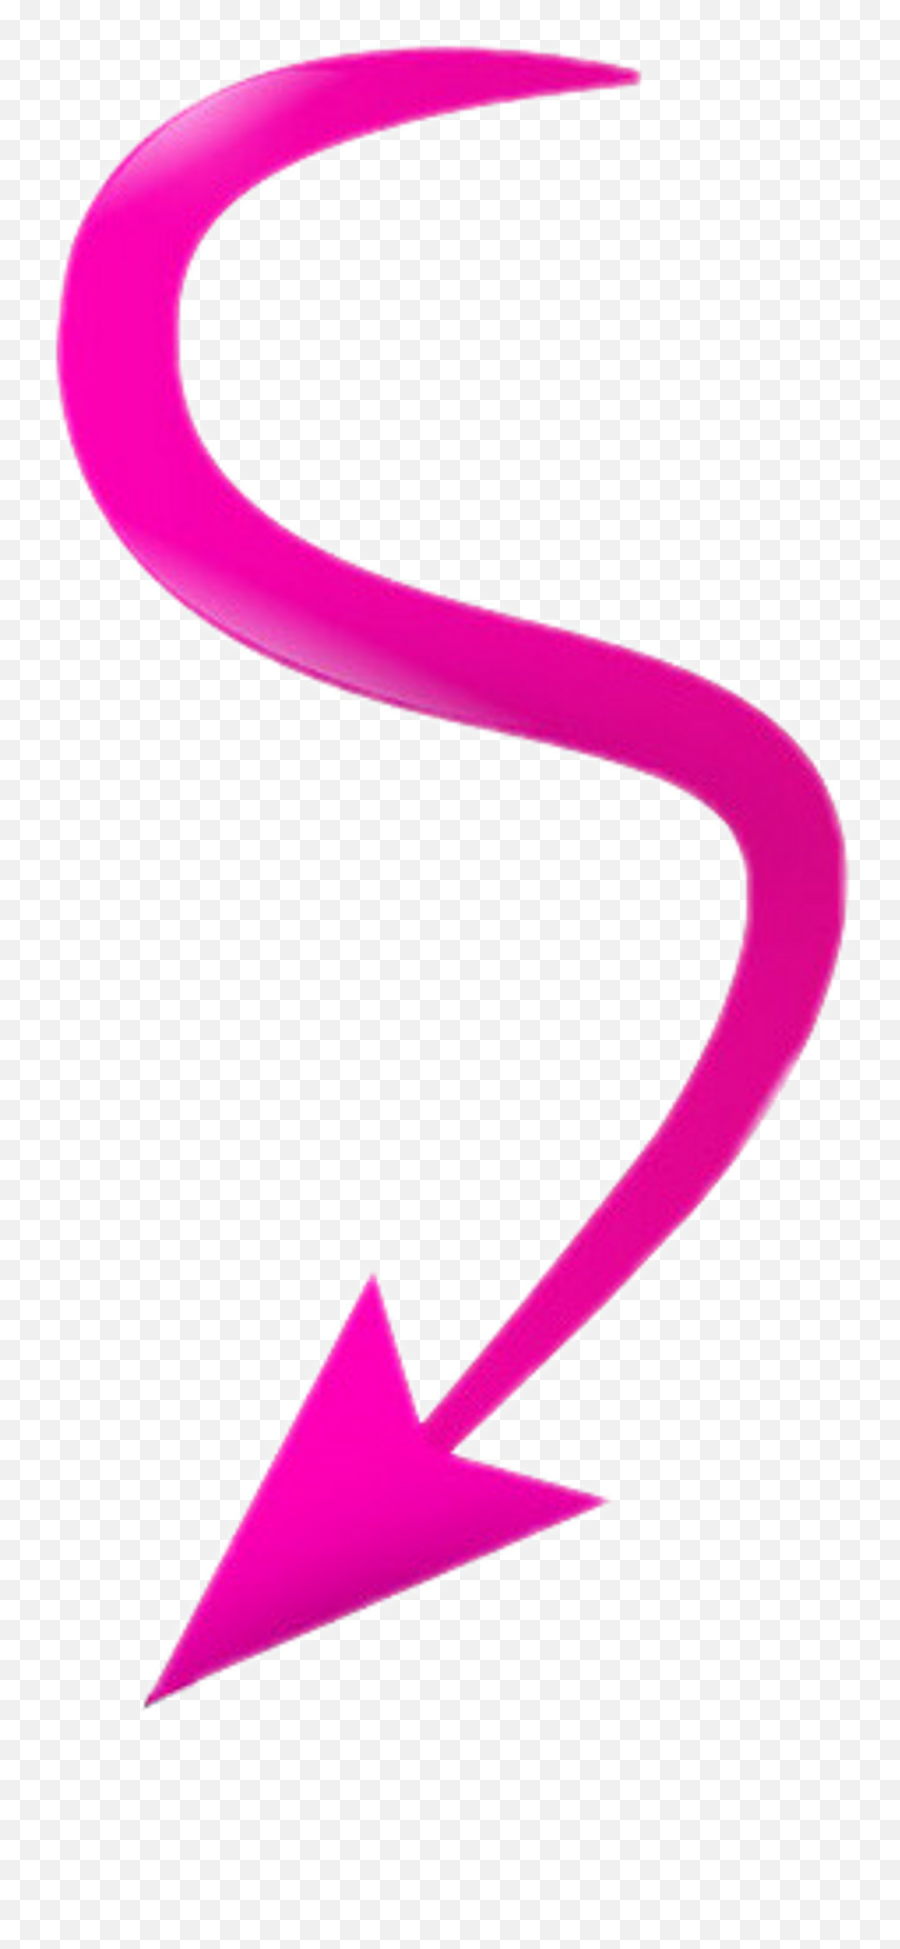 Swirl - Arrow Swirl Png,Pink Arrow Png